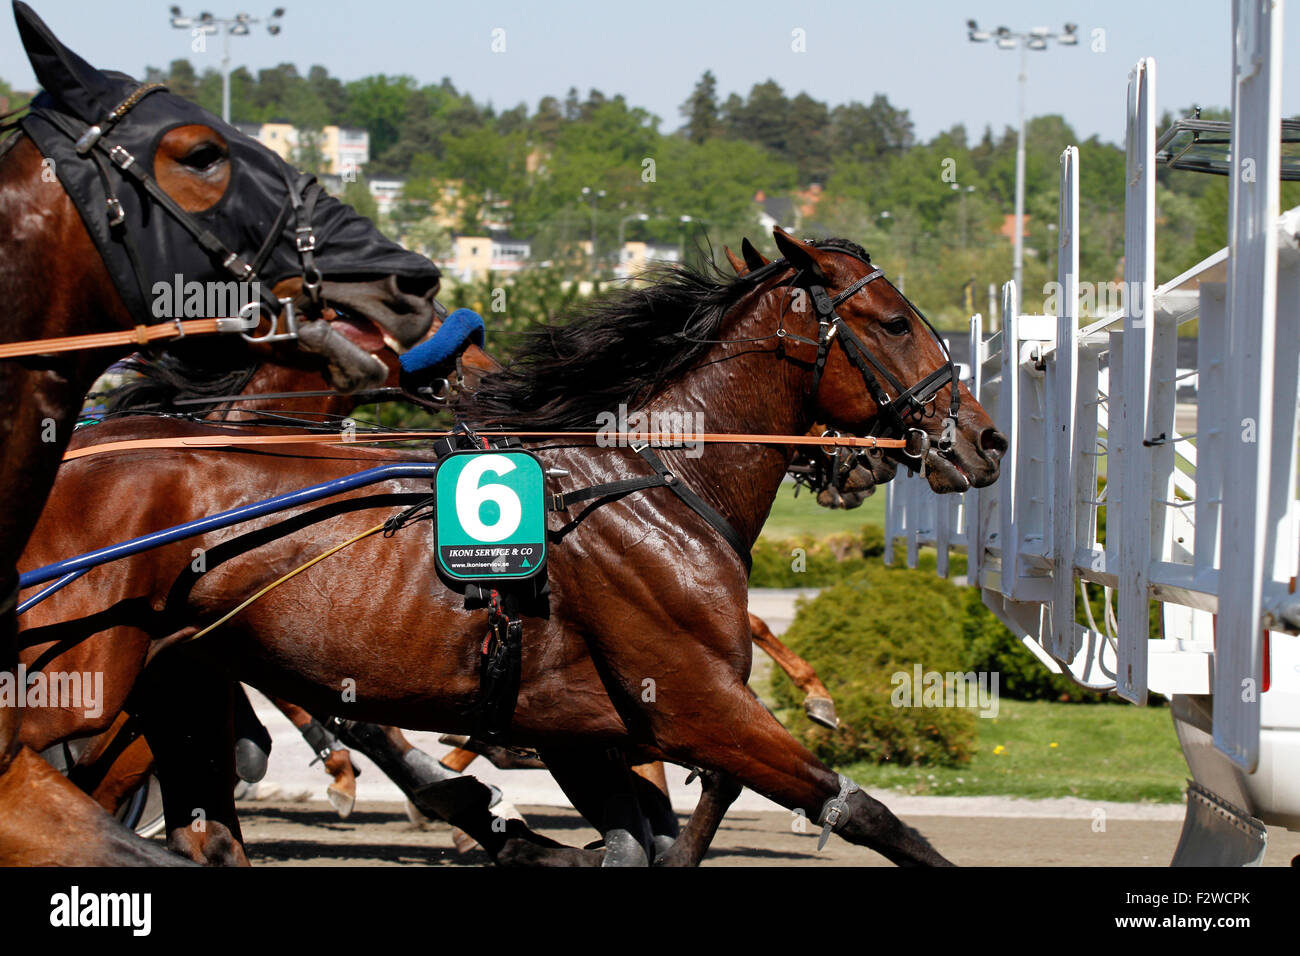 23.05.2014, Stoccolma Stockholms laen, Schweden - cavalli da corsa durante l'avvio. 0MK140523D513CAROEX.JPG - non per la vendita in G e R Foto Stock